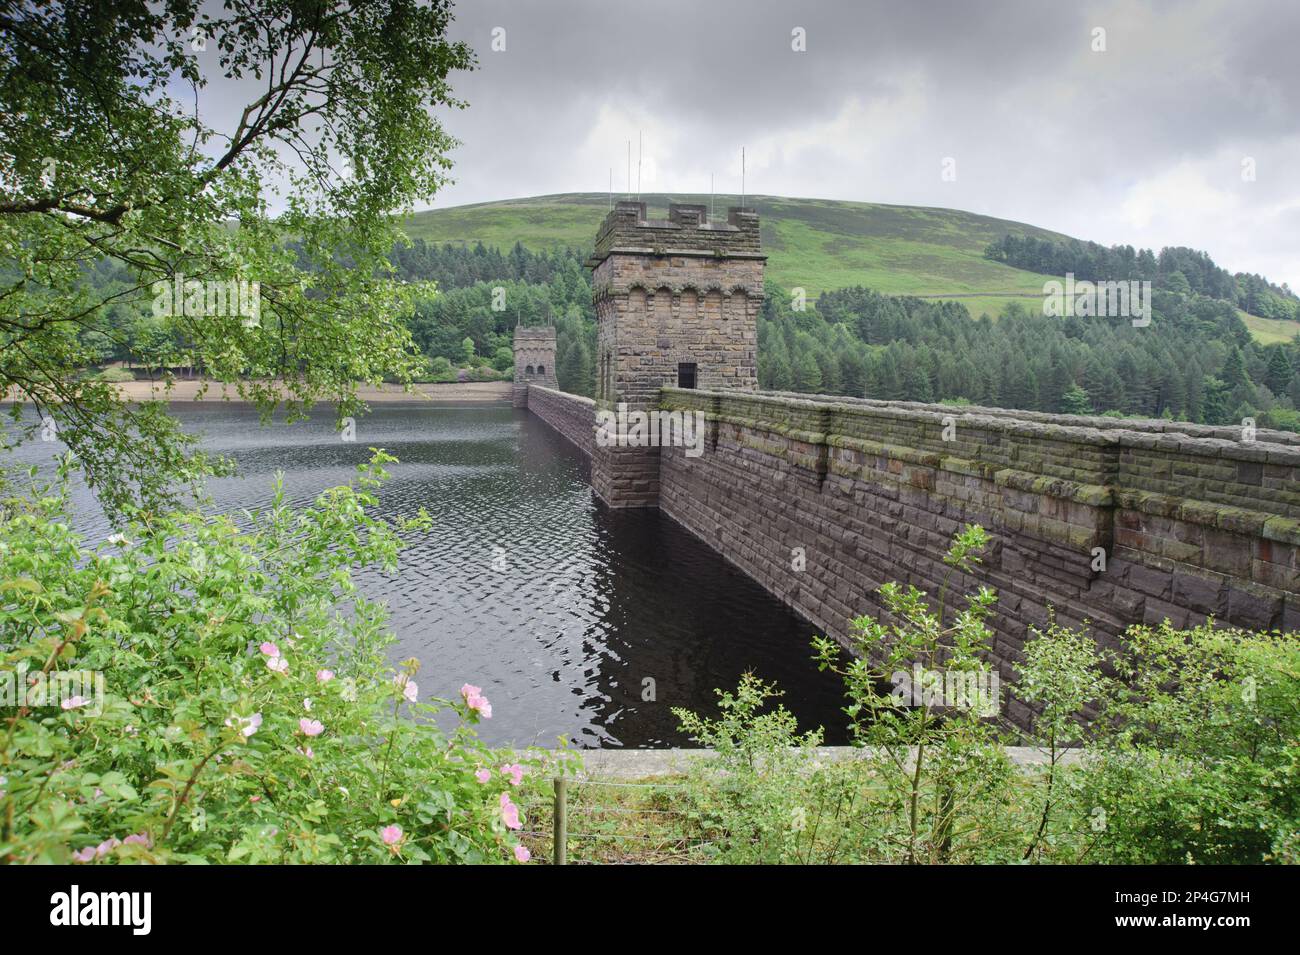 Vue du barrage sur la rivière, Derwent Reservoir, Derwent River, Derbyshire, Angleterre, Royaume-Uni Banque D'Images